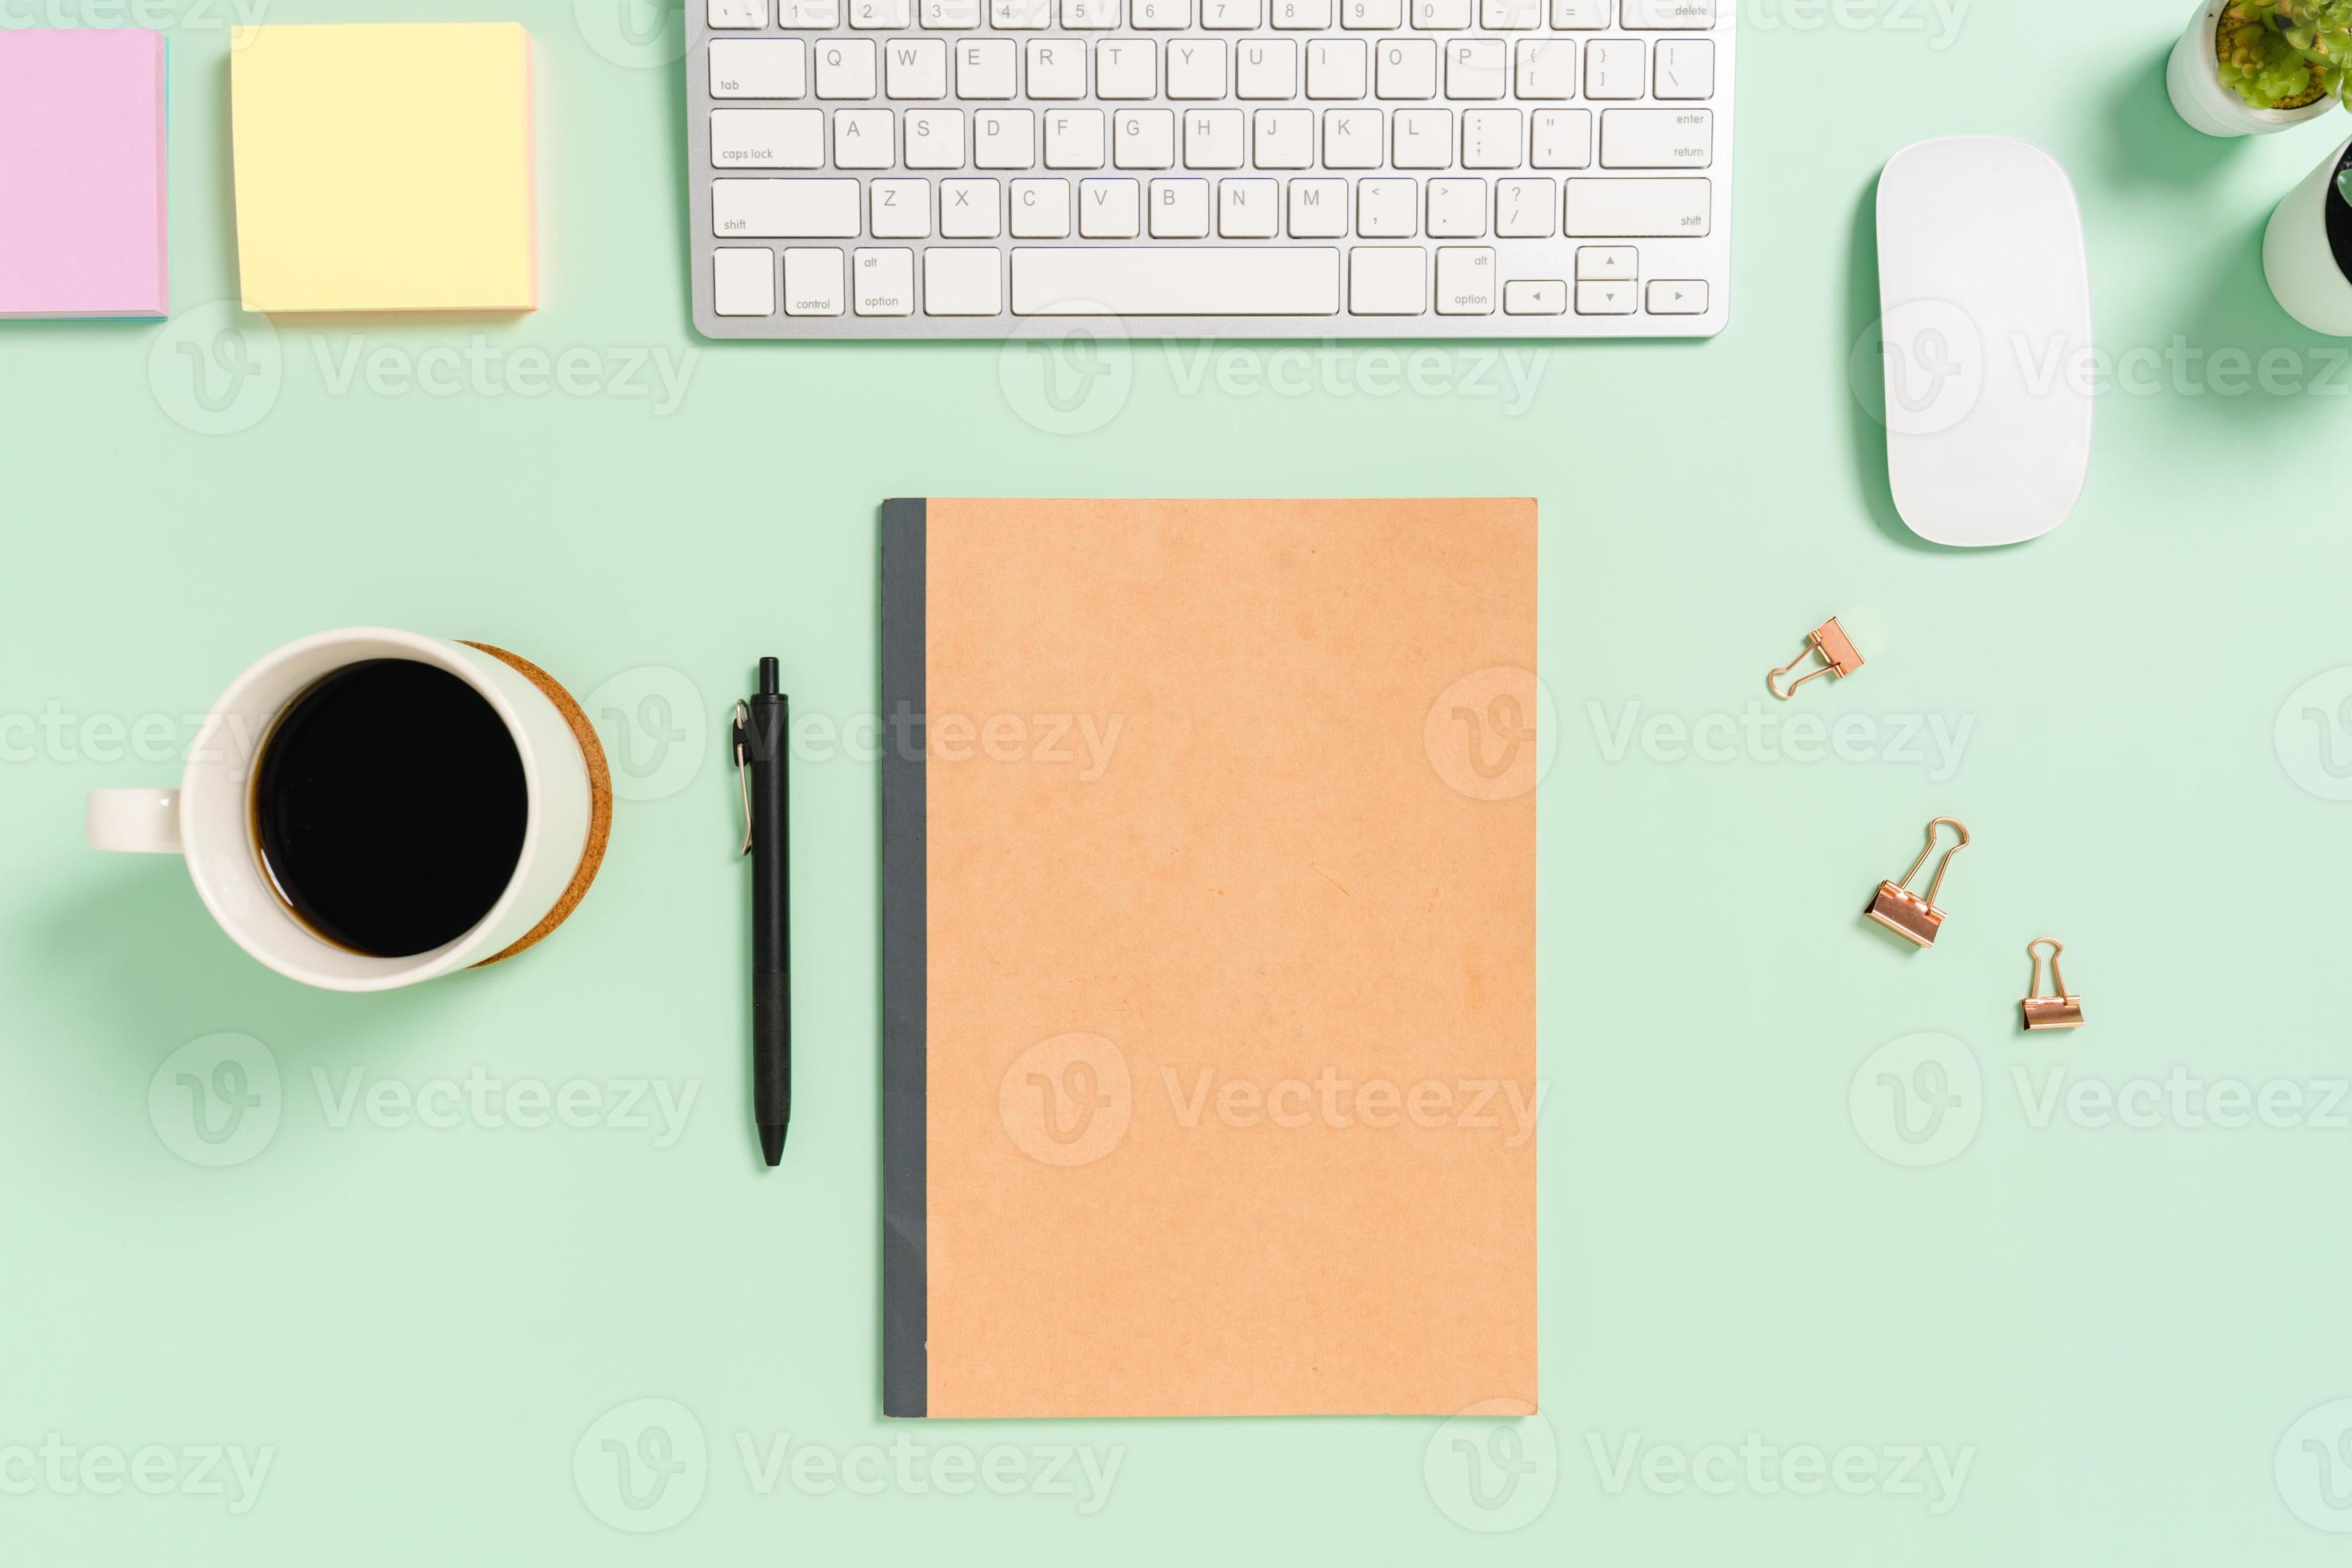 creatieve platliggende foto van een werkruimtebureau. bovenaanzicht bureau met toetsenbord, muis en mockup zwarte notebook op pastel groene kleur achtergrond. bovenaanzicht mock-up met kopieerruimtefotografie.